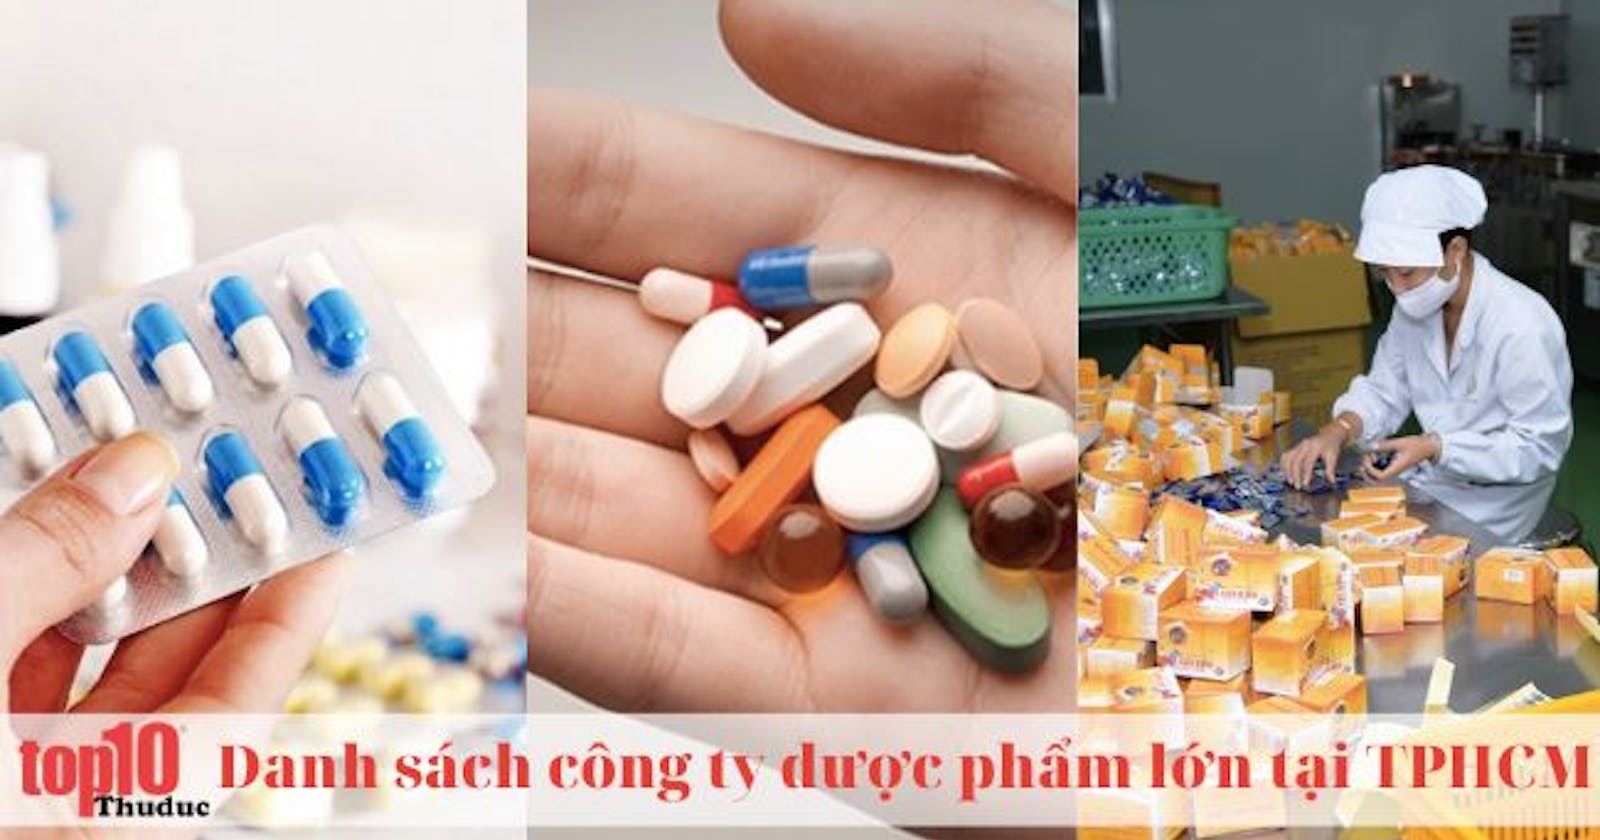 Top 15 các công ty dược phẩm lớn tại TPHCM an toàn, chất lượng